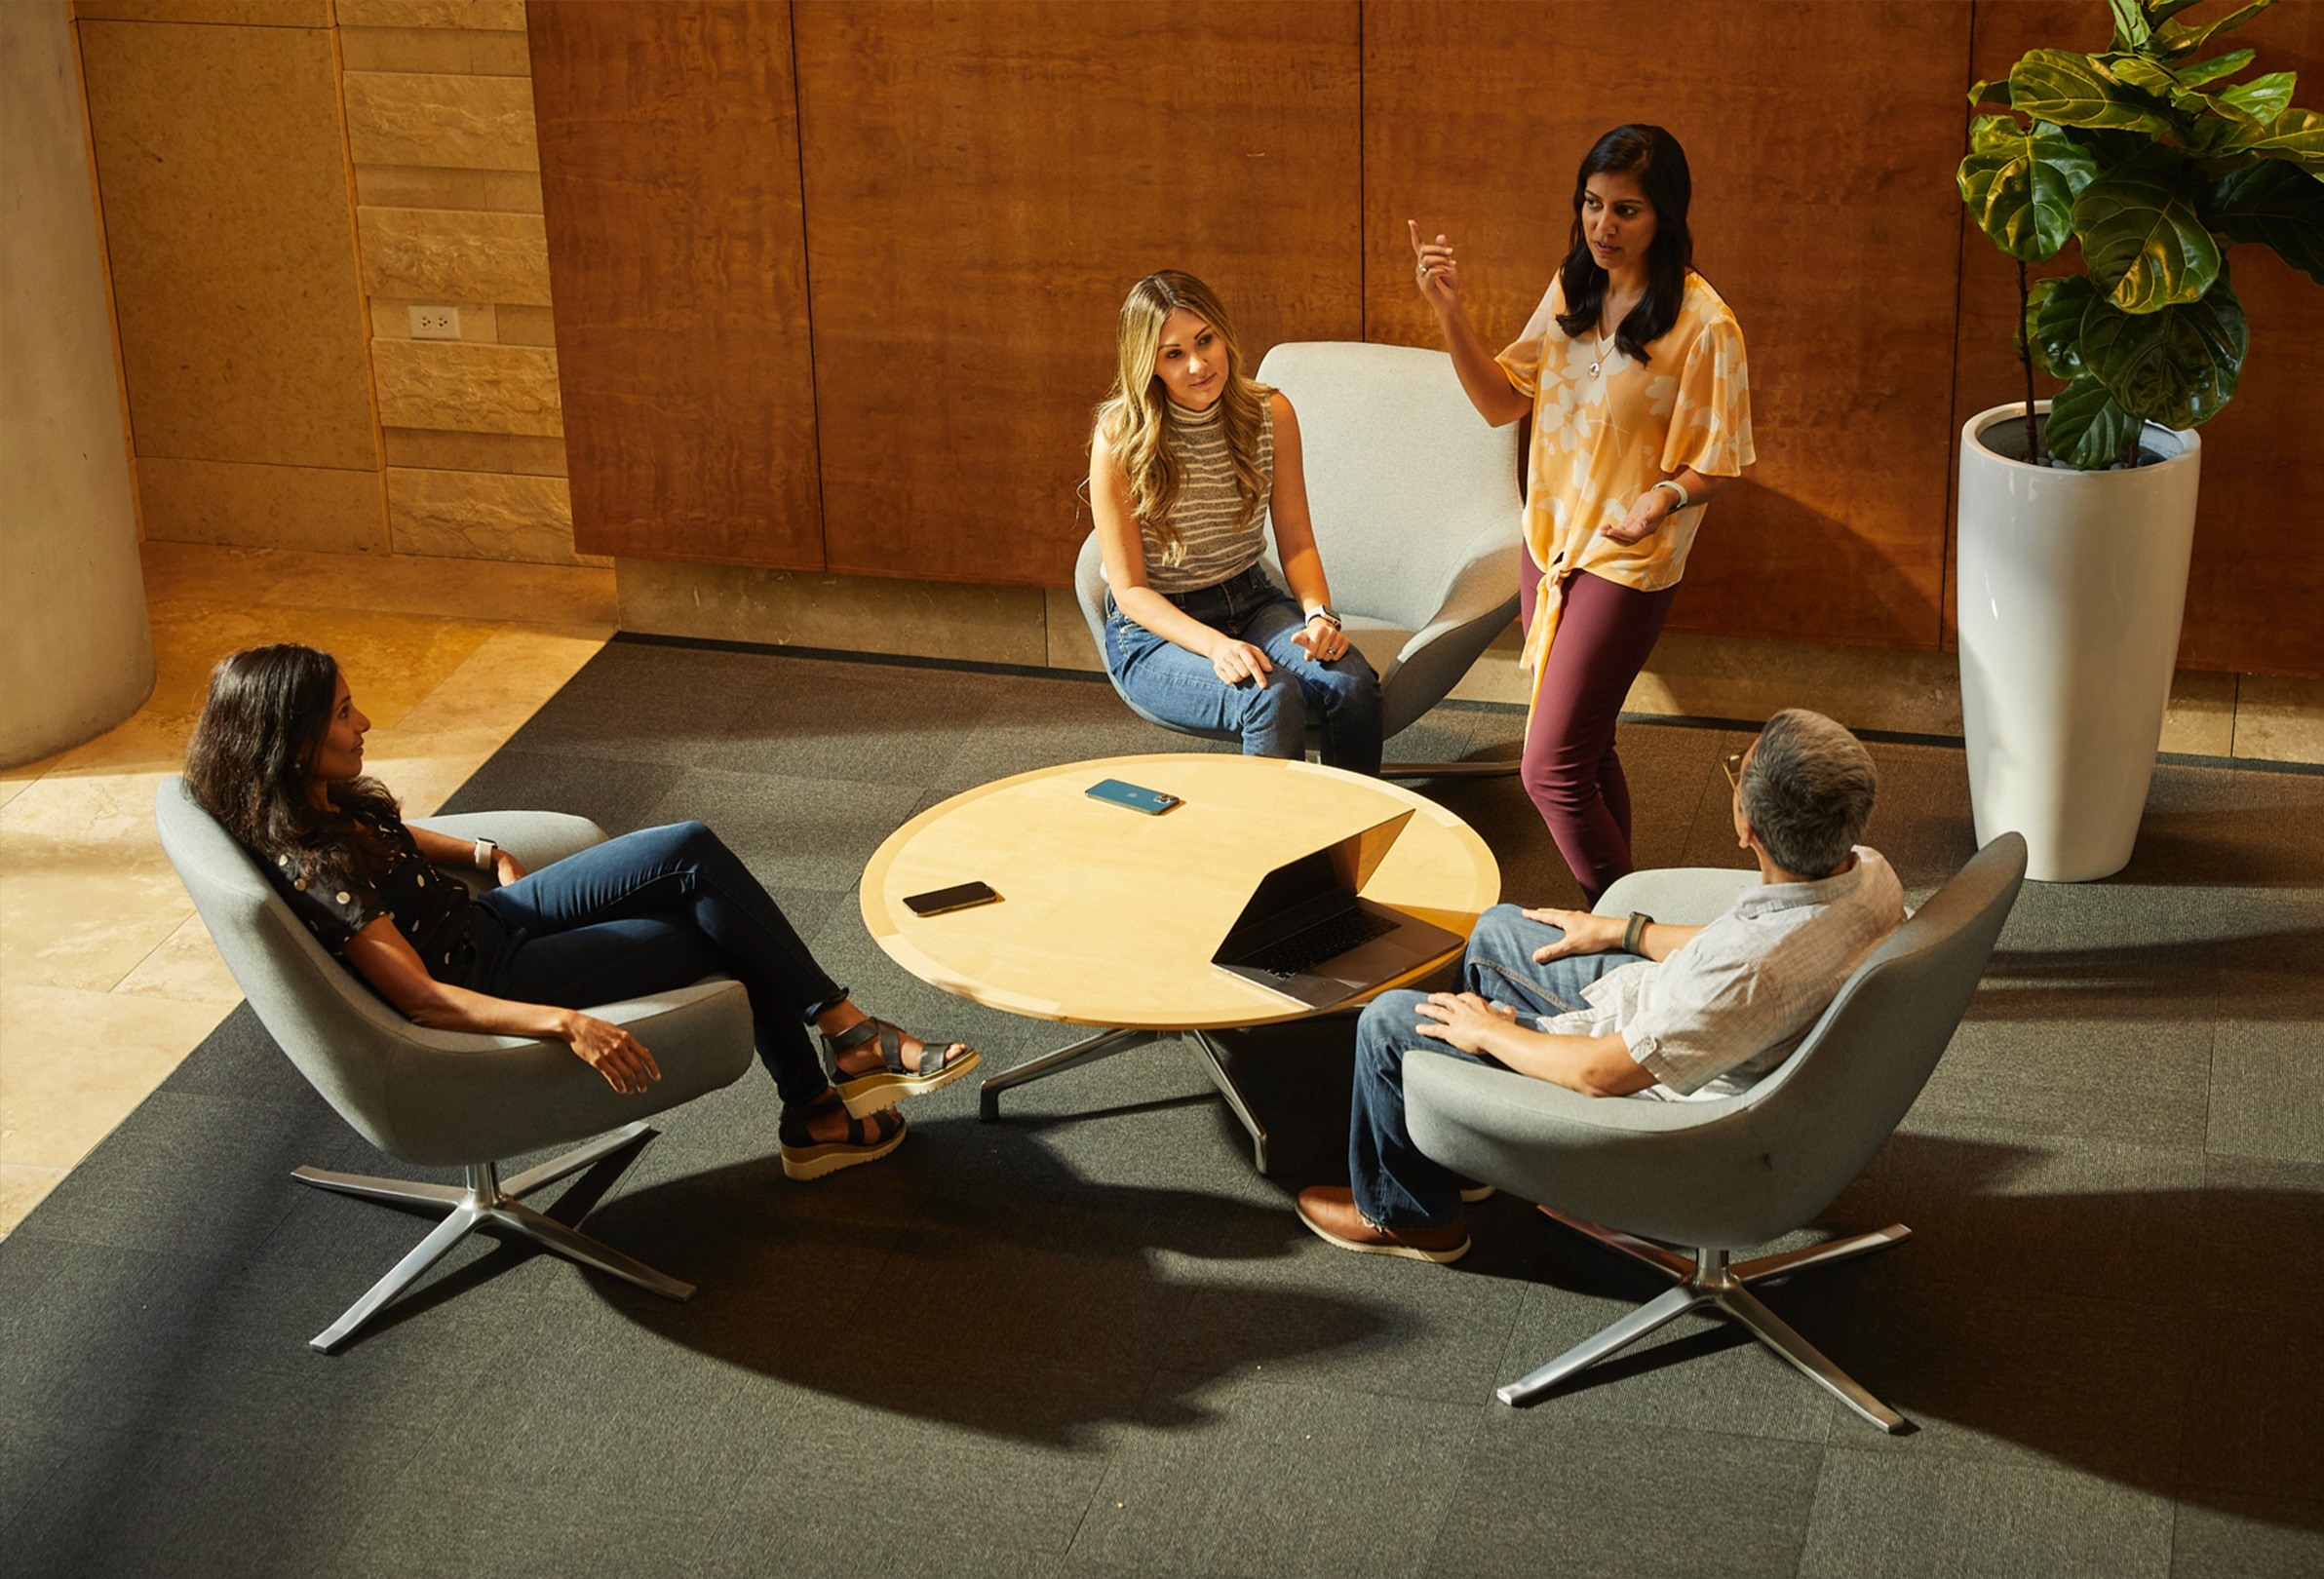 Az Apple négy alkalmazottja egy nyugalmas, együttműködésre készült helyiségben ül és beszélget.